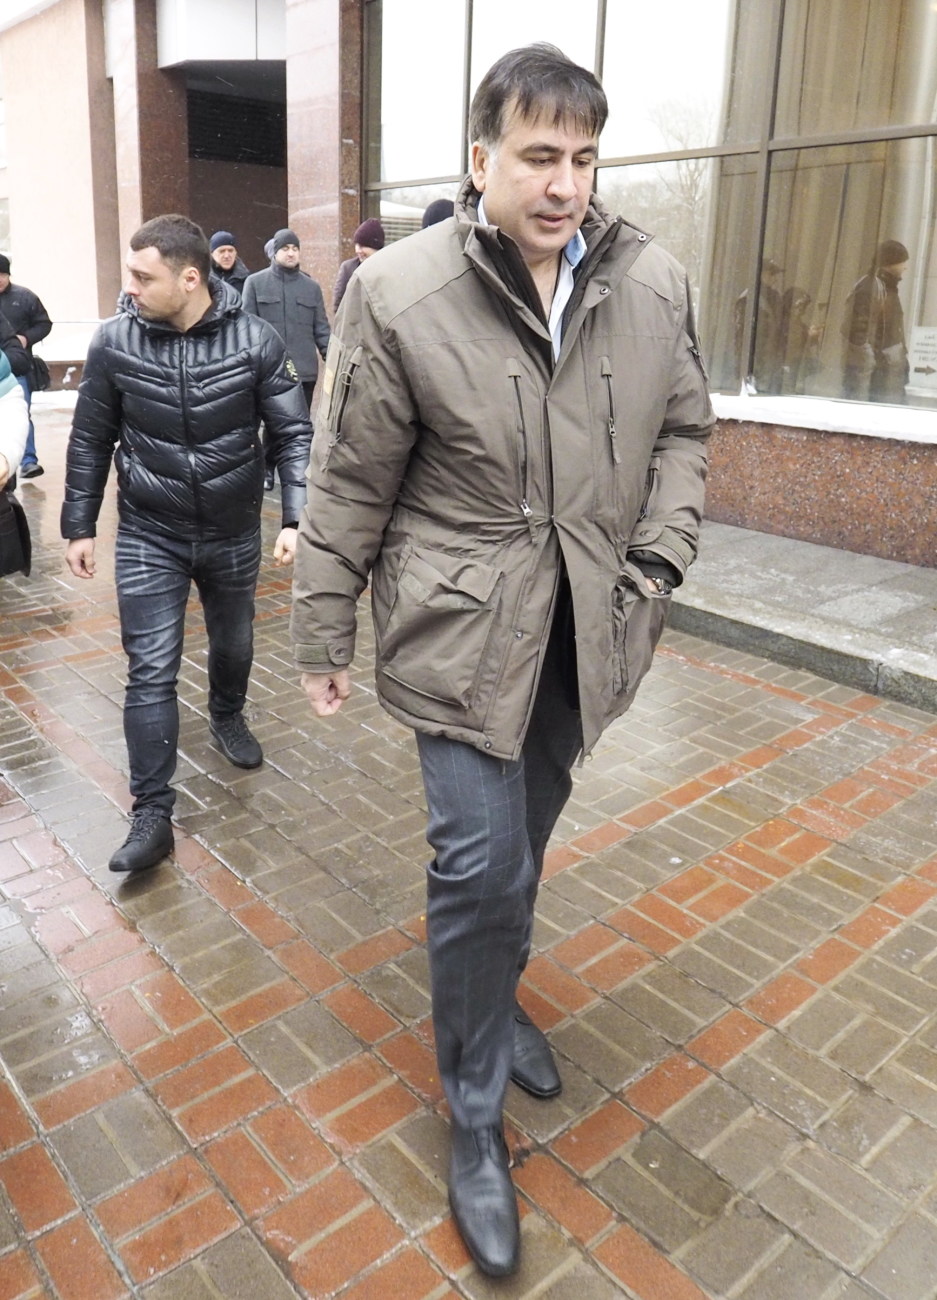 Меру пресечения Саакашвили продолжат пересматривать в новом году